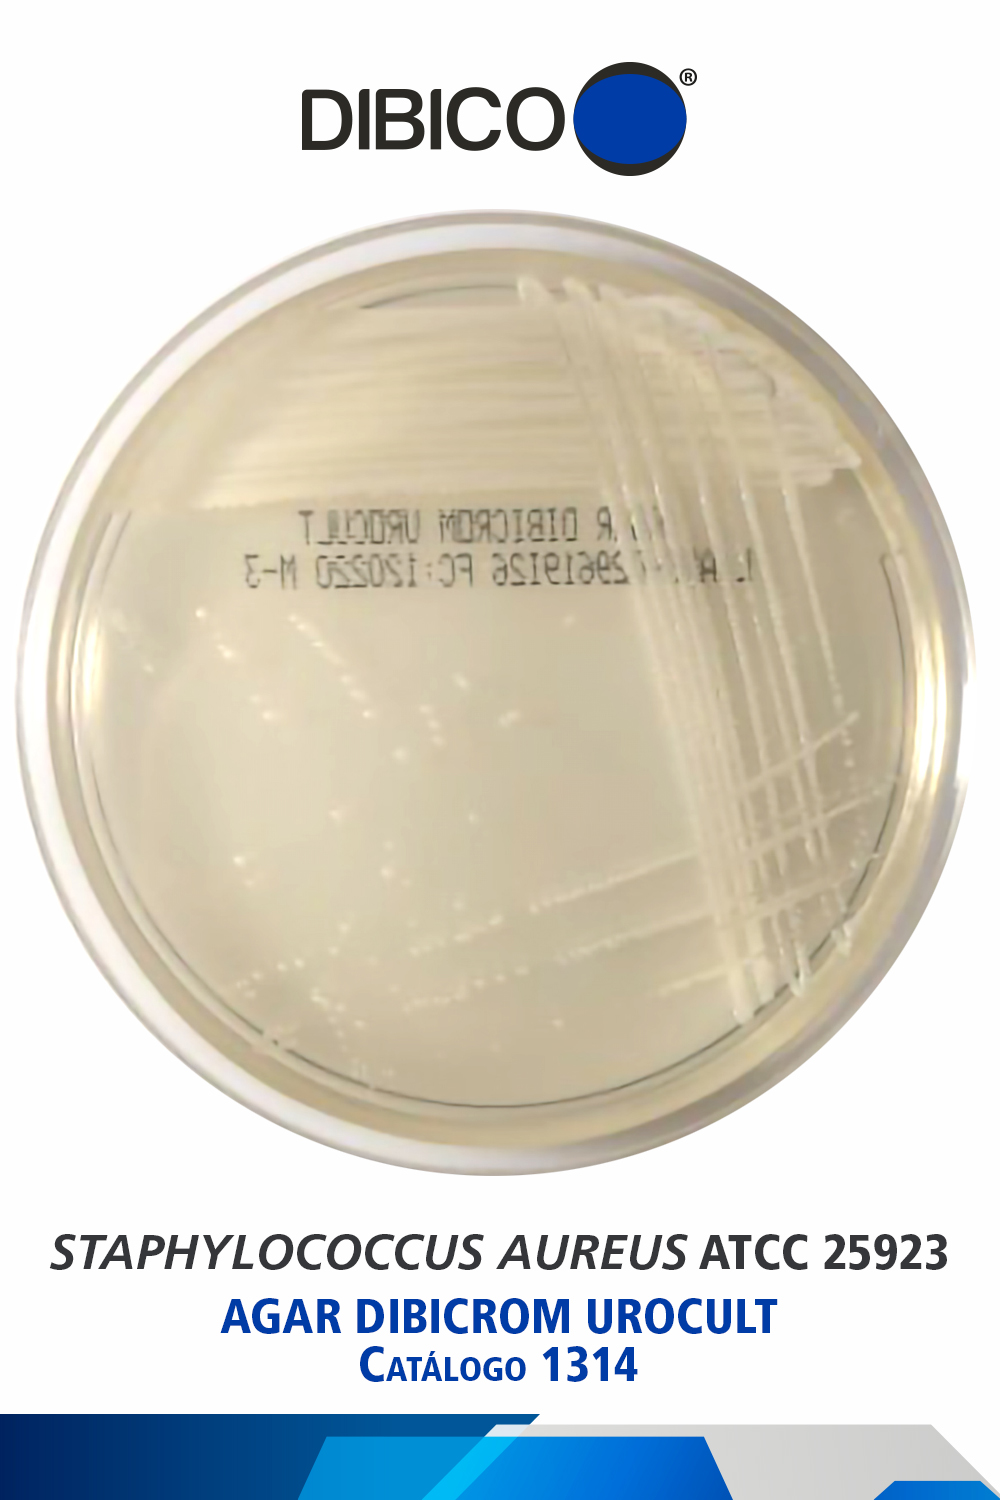 Staphylococcus aureus ATCC 25923